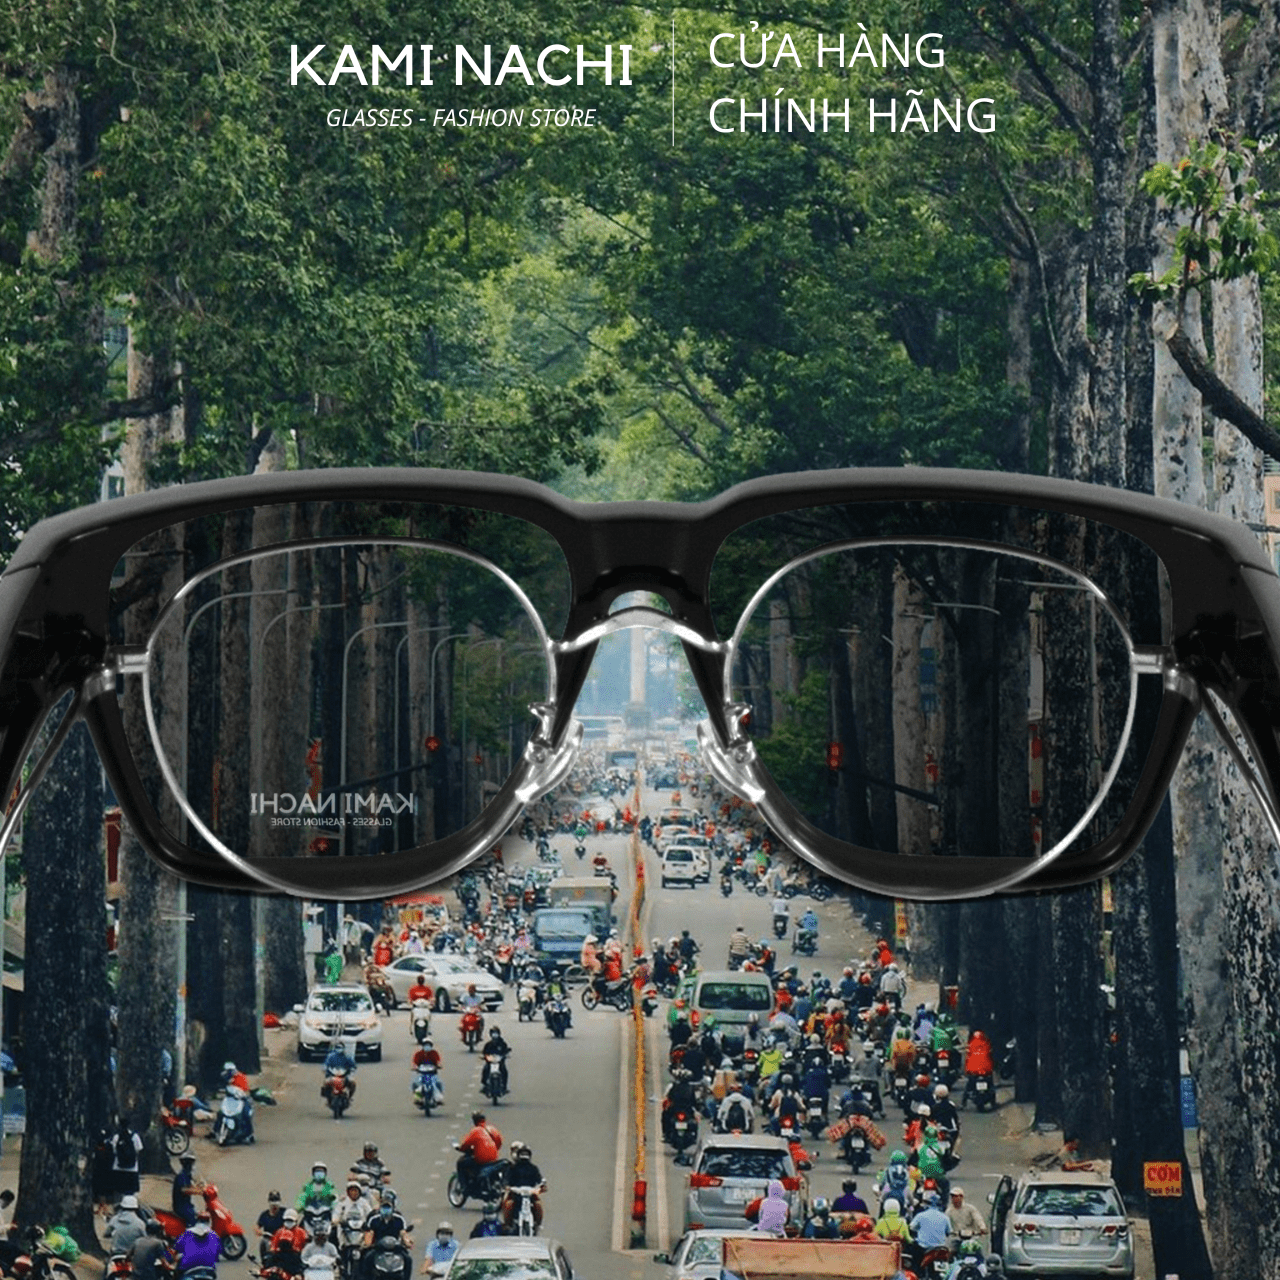 Gọng kính Shield Glasses chống phân cực, chống tia UV, có thể đeo cùng lúc với kính cận KAMI NACHI T8801